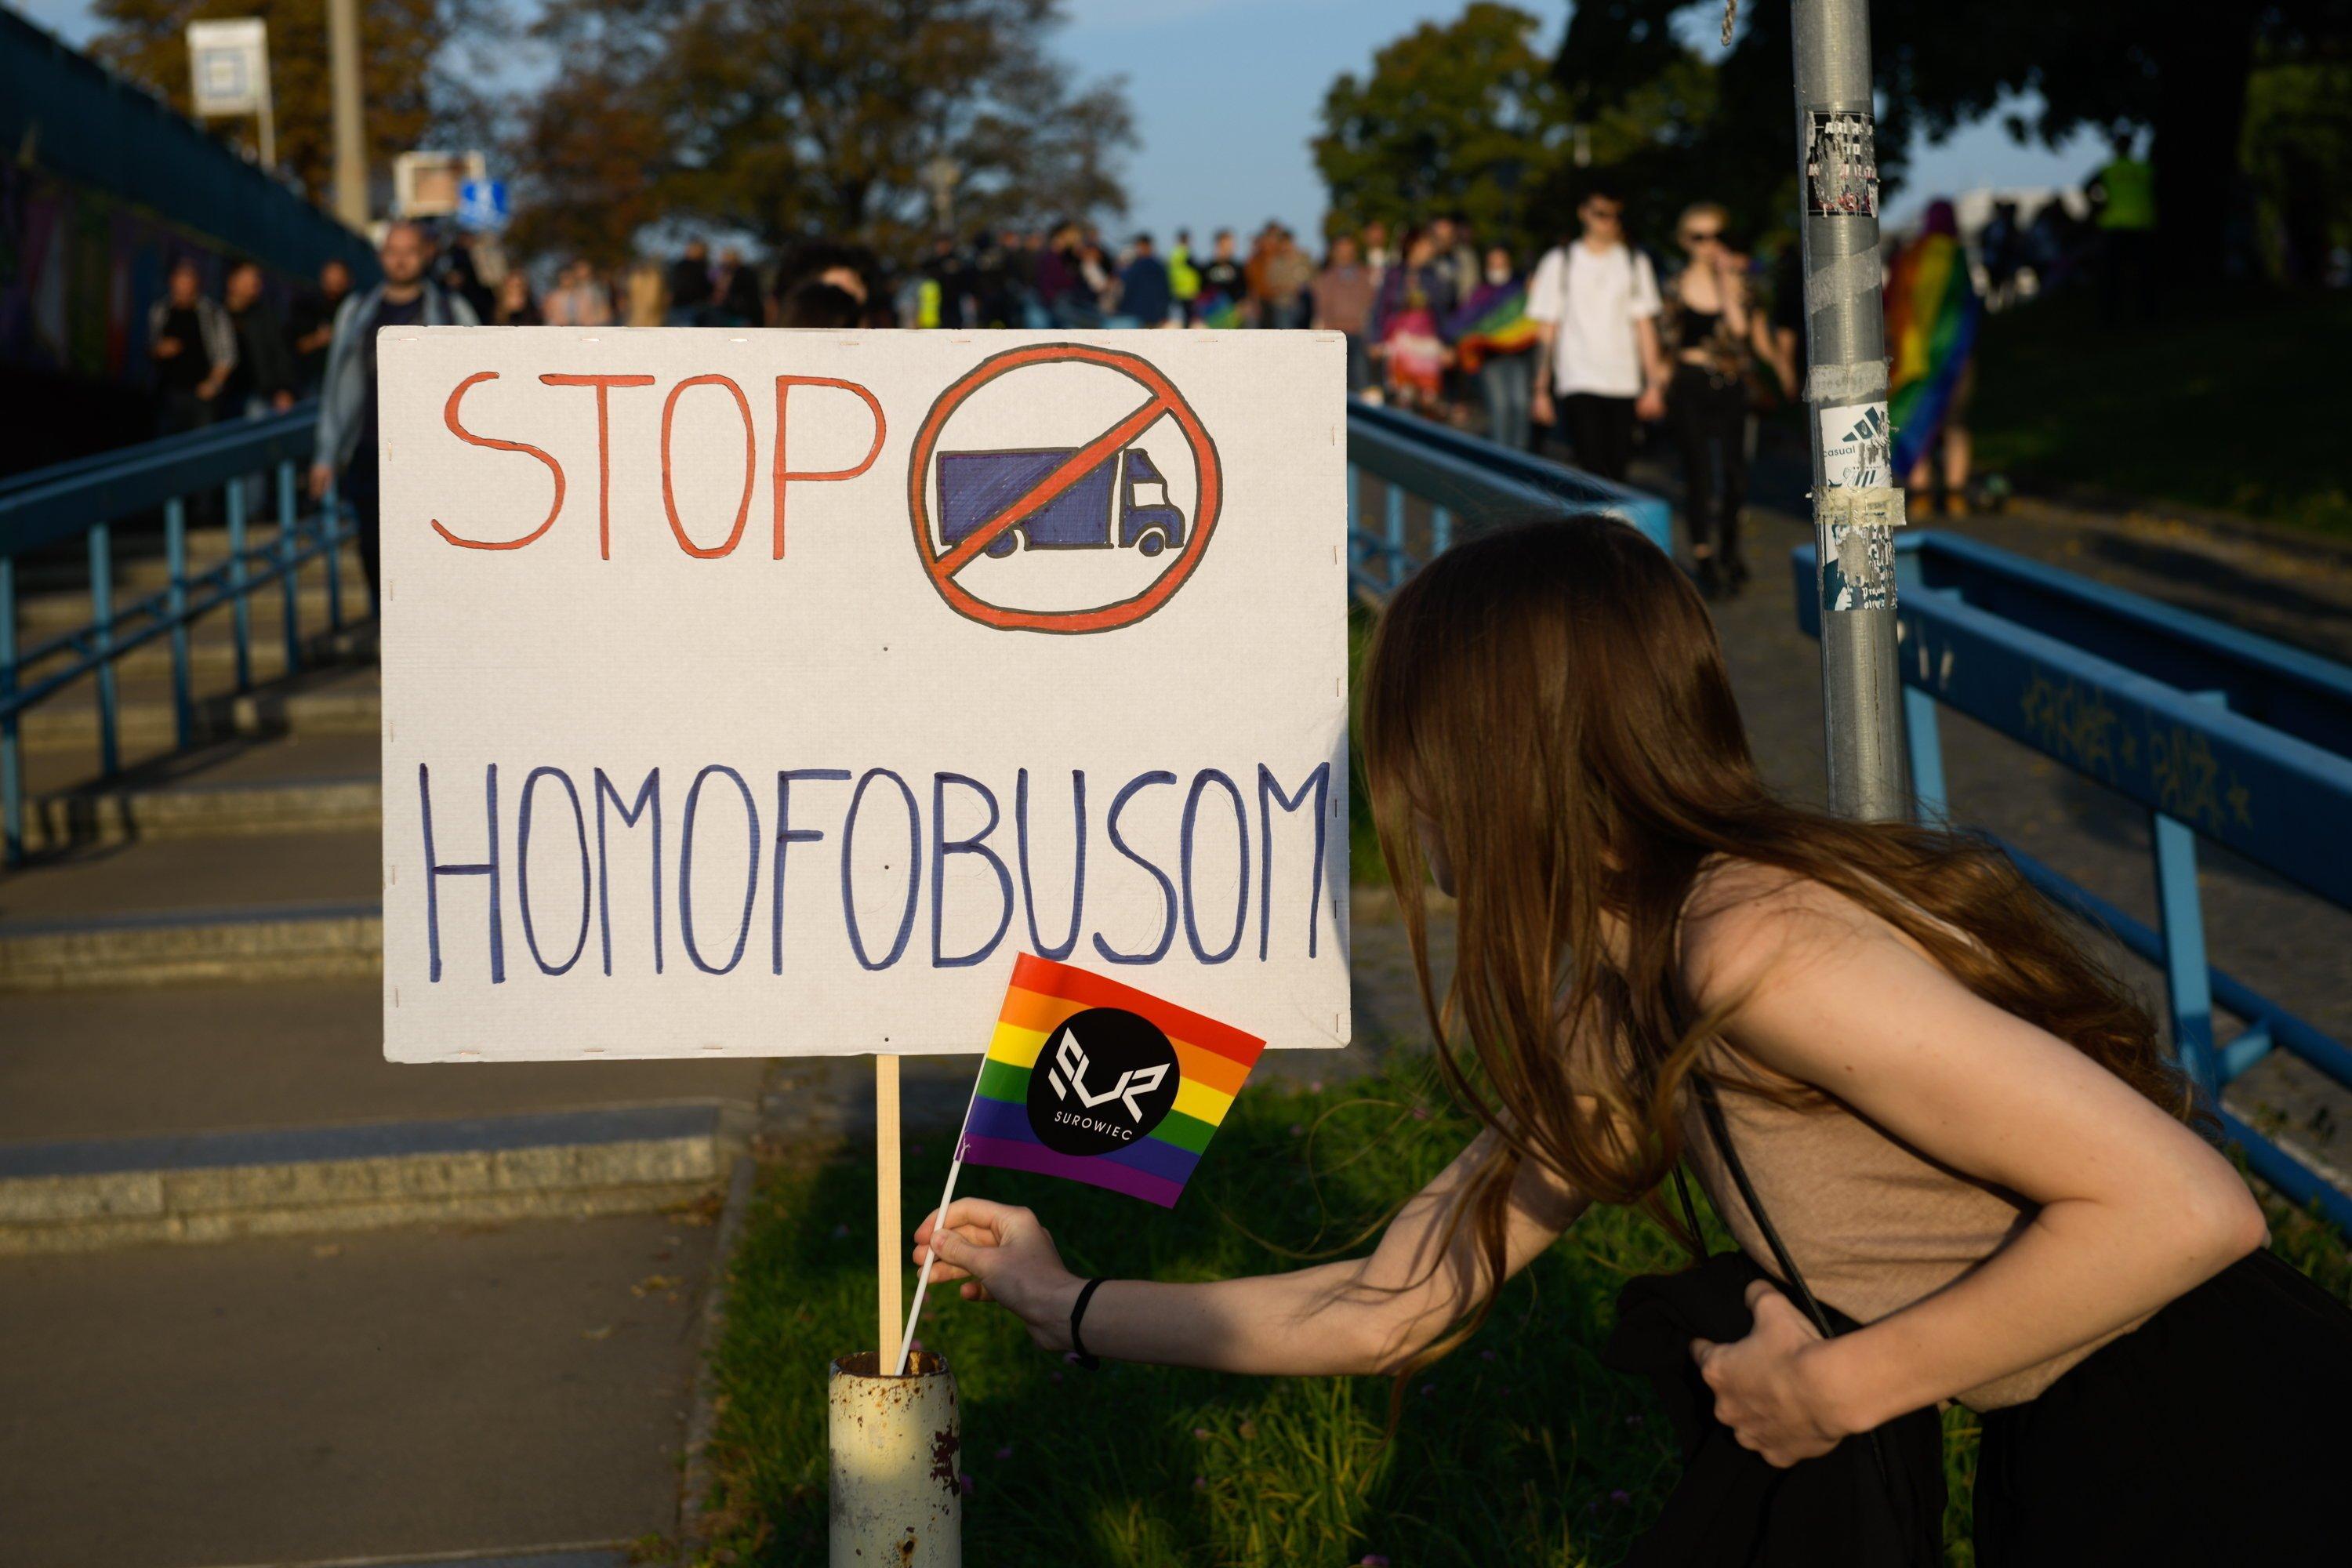 Na zdjęciu plakat "stop homofobusom" i tęczowa flaga